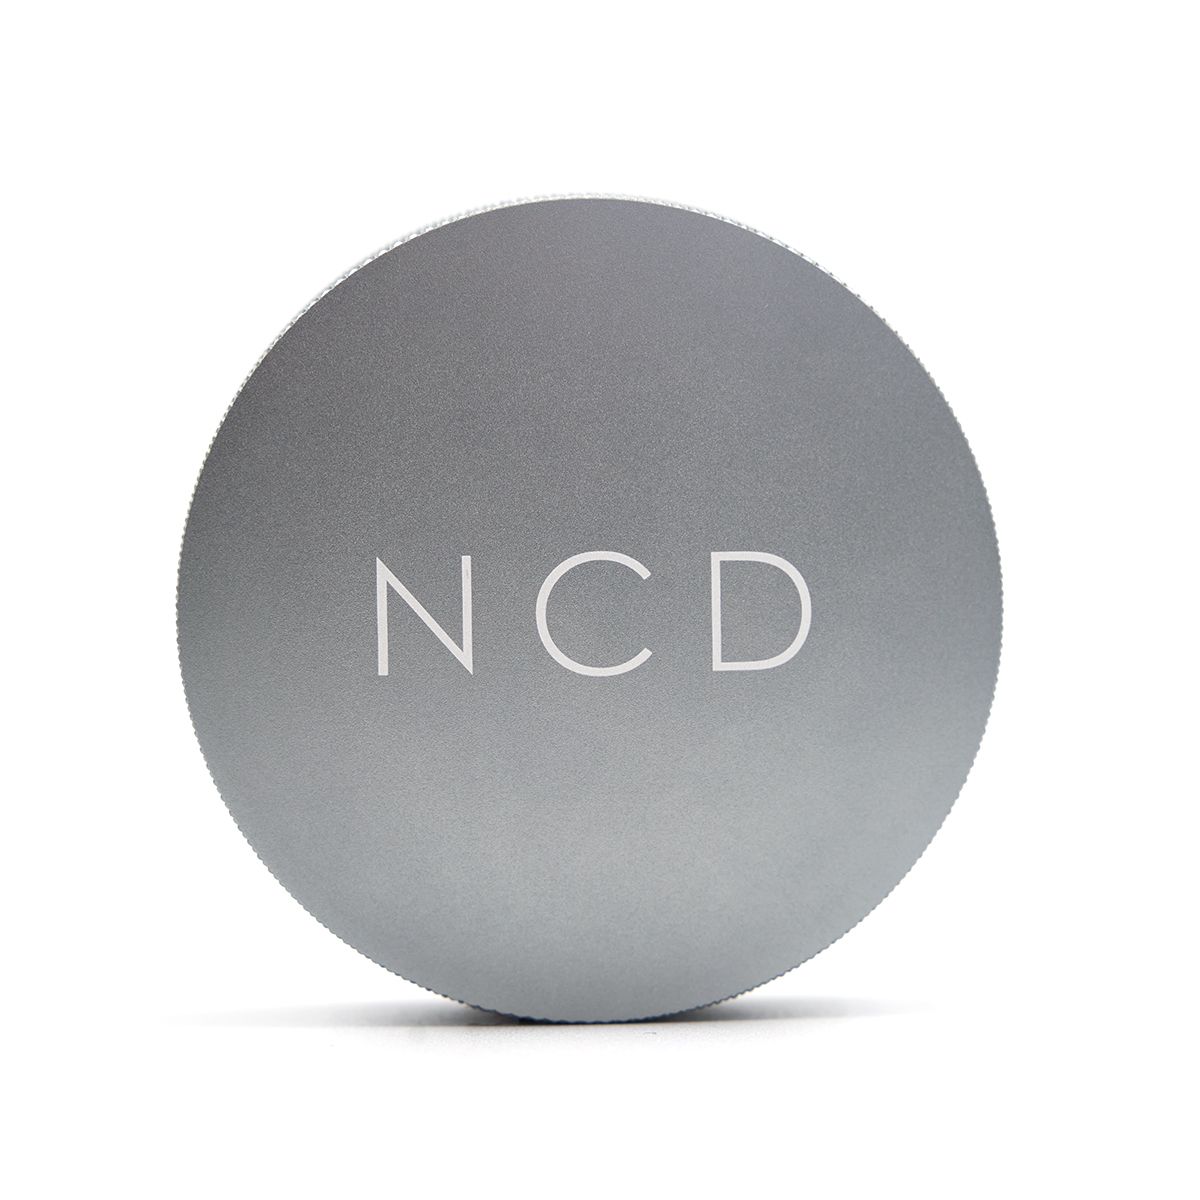 Nucleus Distribution Tool NCD in titanium